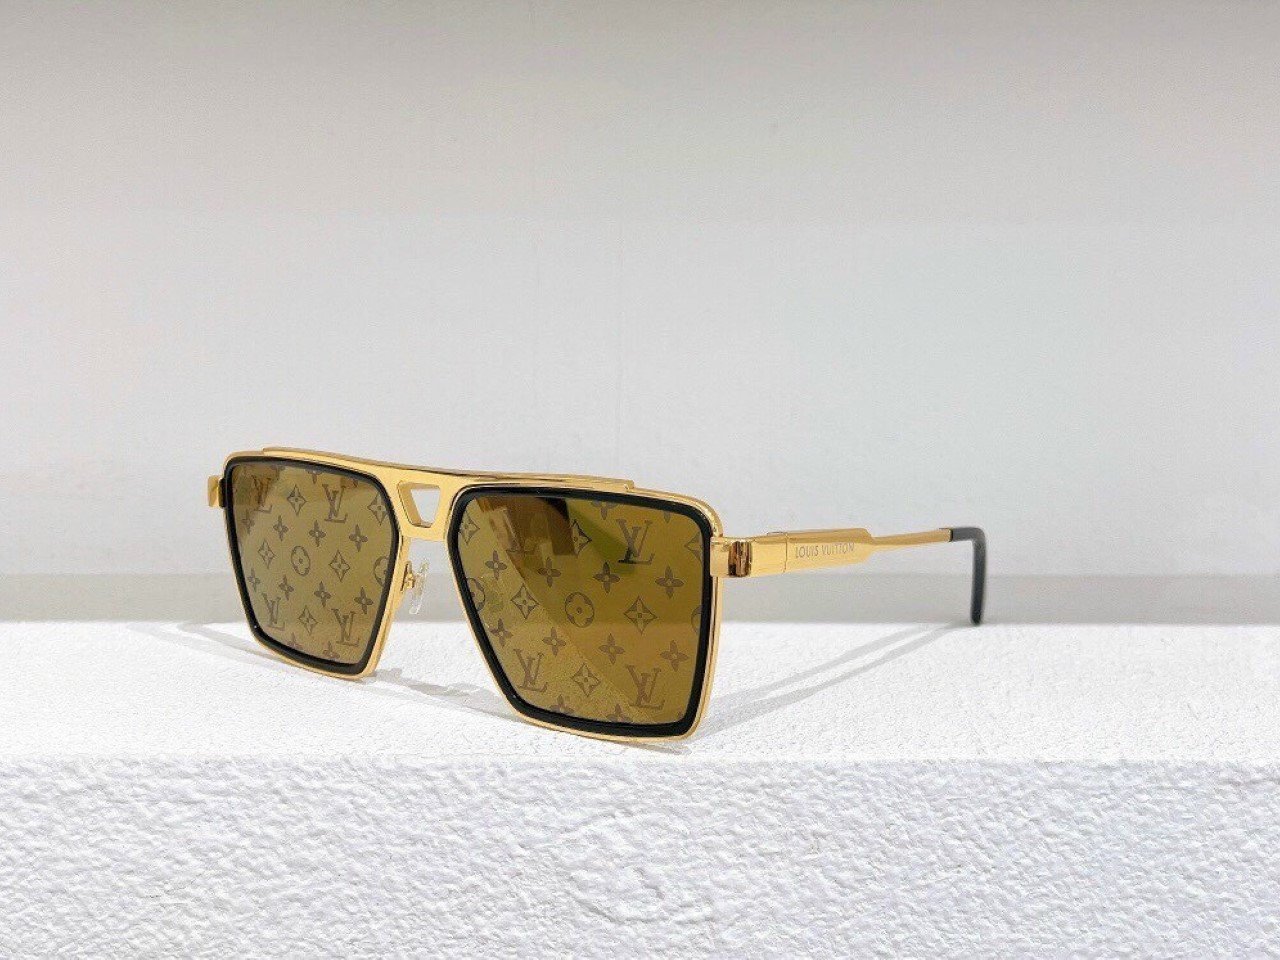 Louis Vuitton, Accessories, Louis Vuitton 1 Evidence Metal Square  Sunglasses